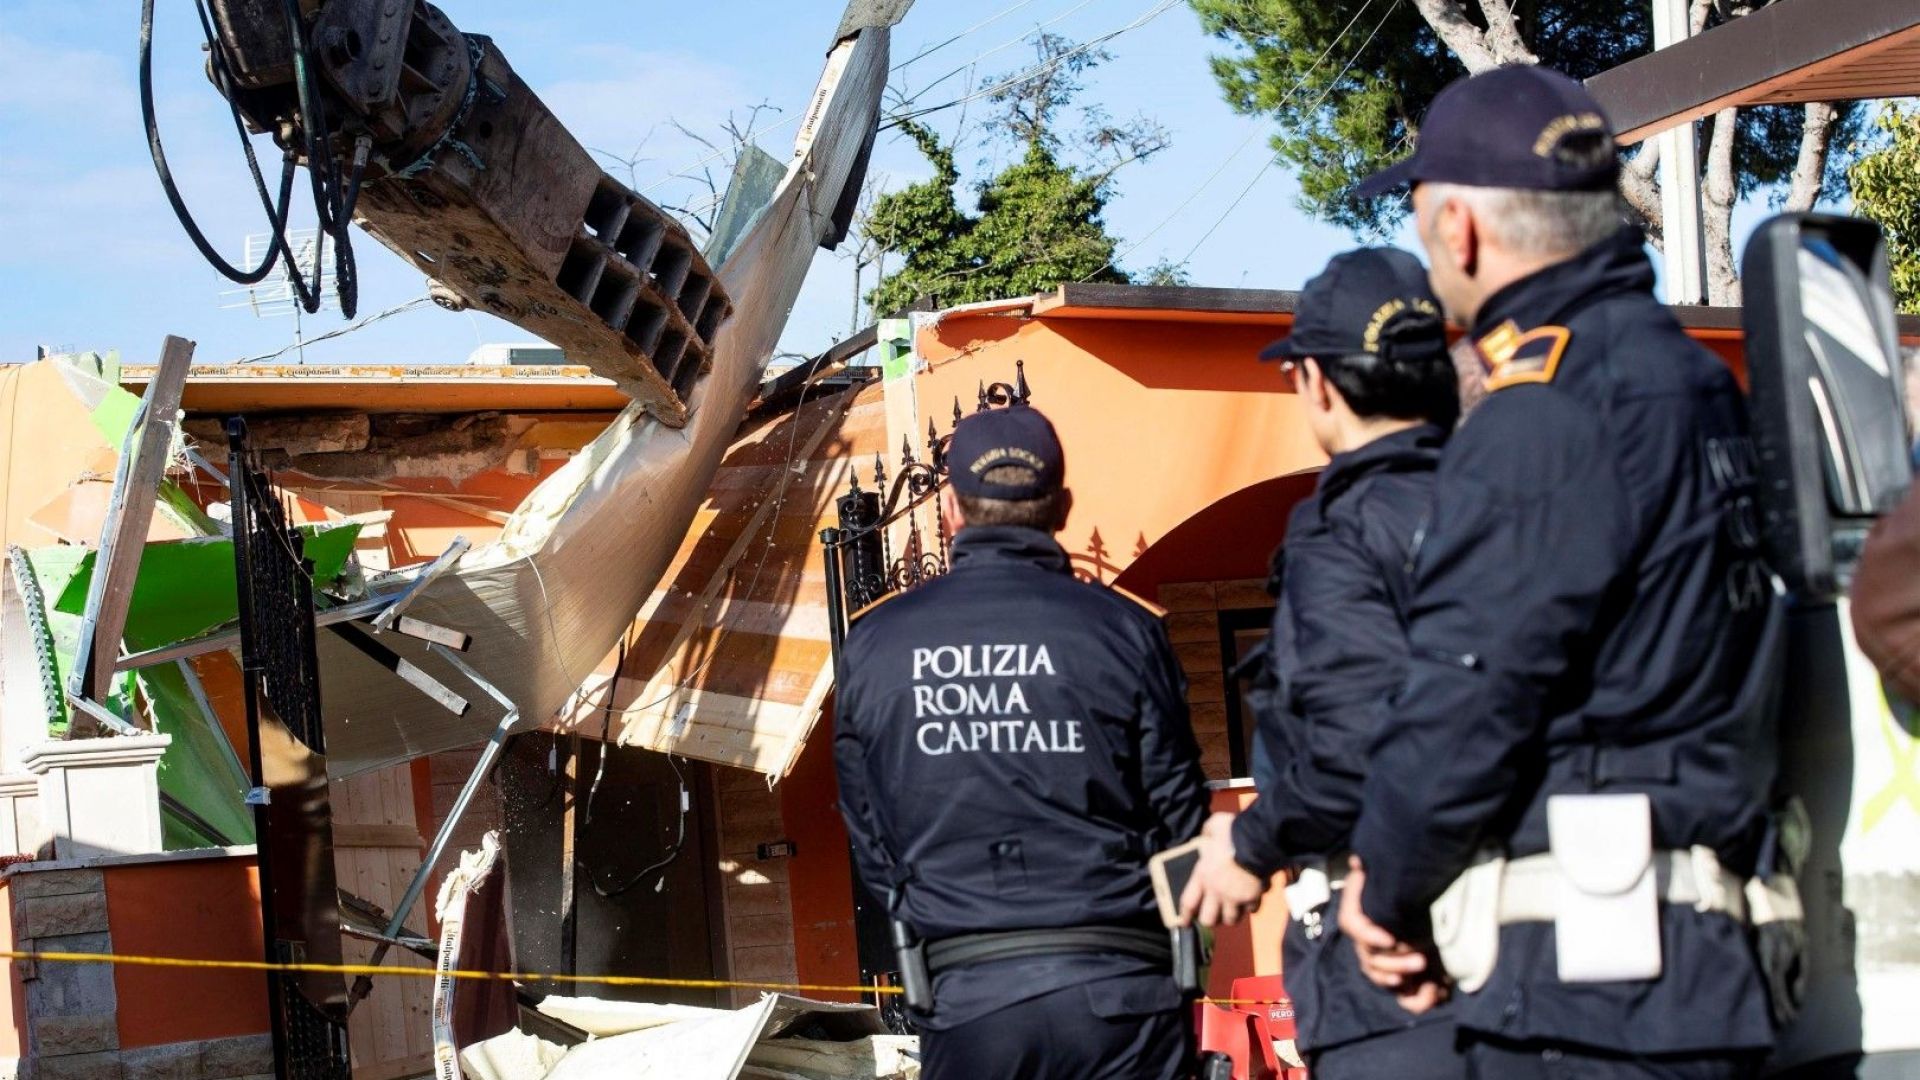 Италианската полиция започна разрушаването на осем вили построени незаконно в